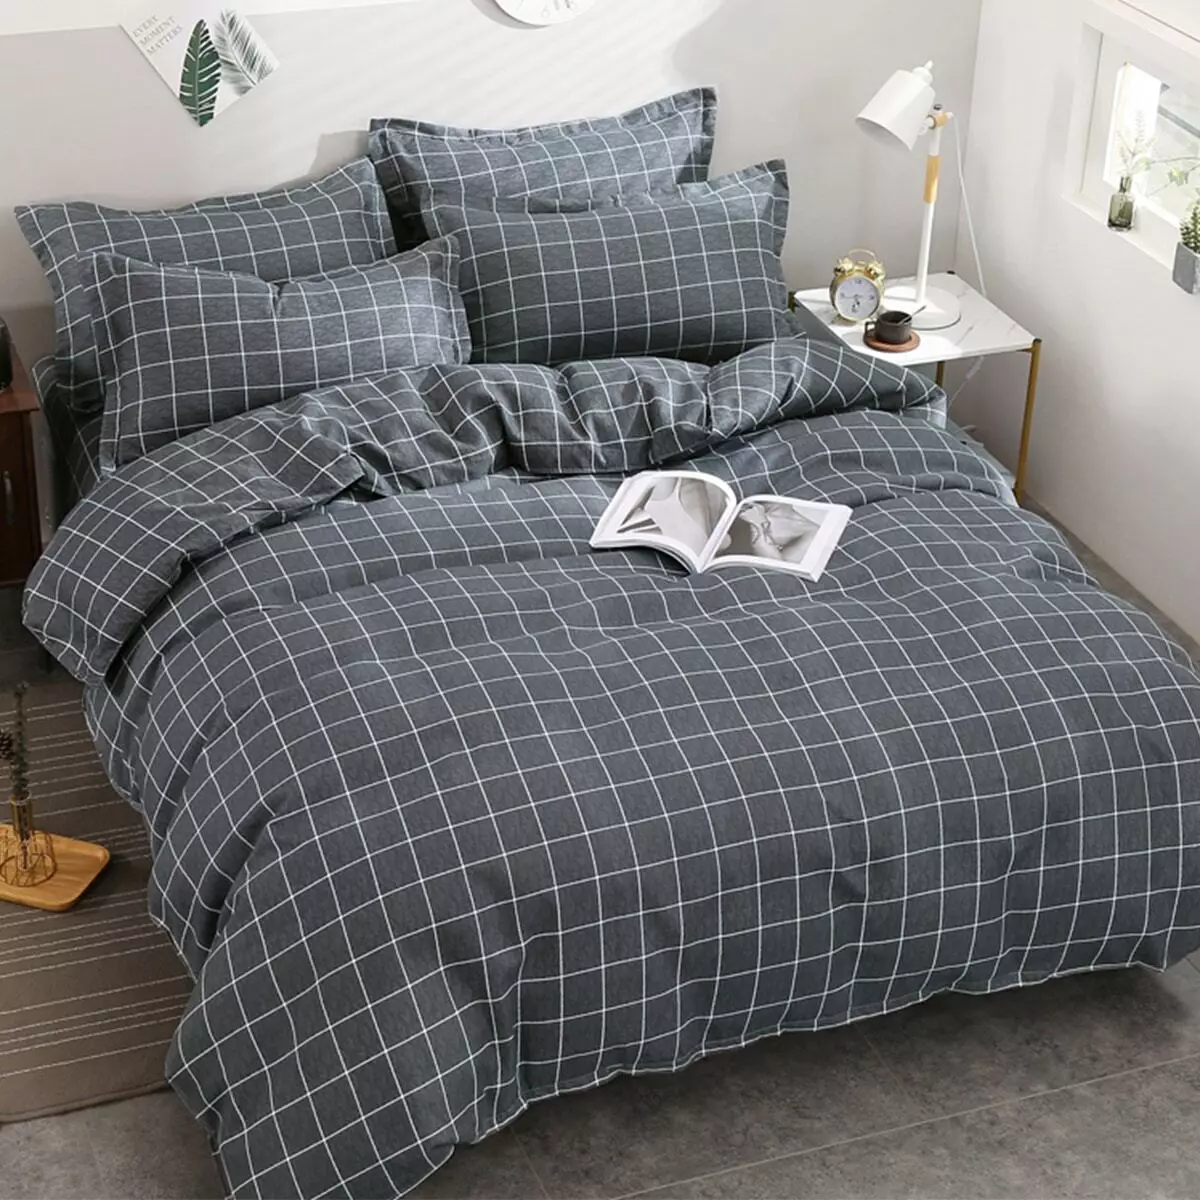 Tessuto per biancheria da letto: che materiale è meglio comprare? Tipi e valutazione. Come scegliere il letto di alta qualità? Da cosa sono cuciti? 24761_44